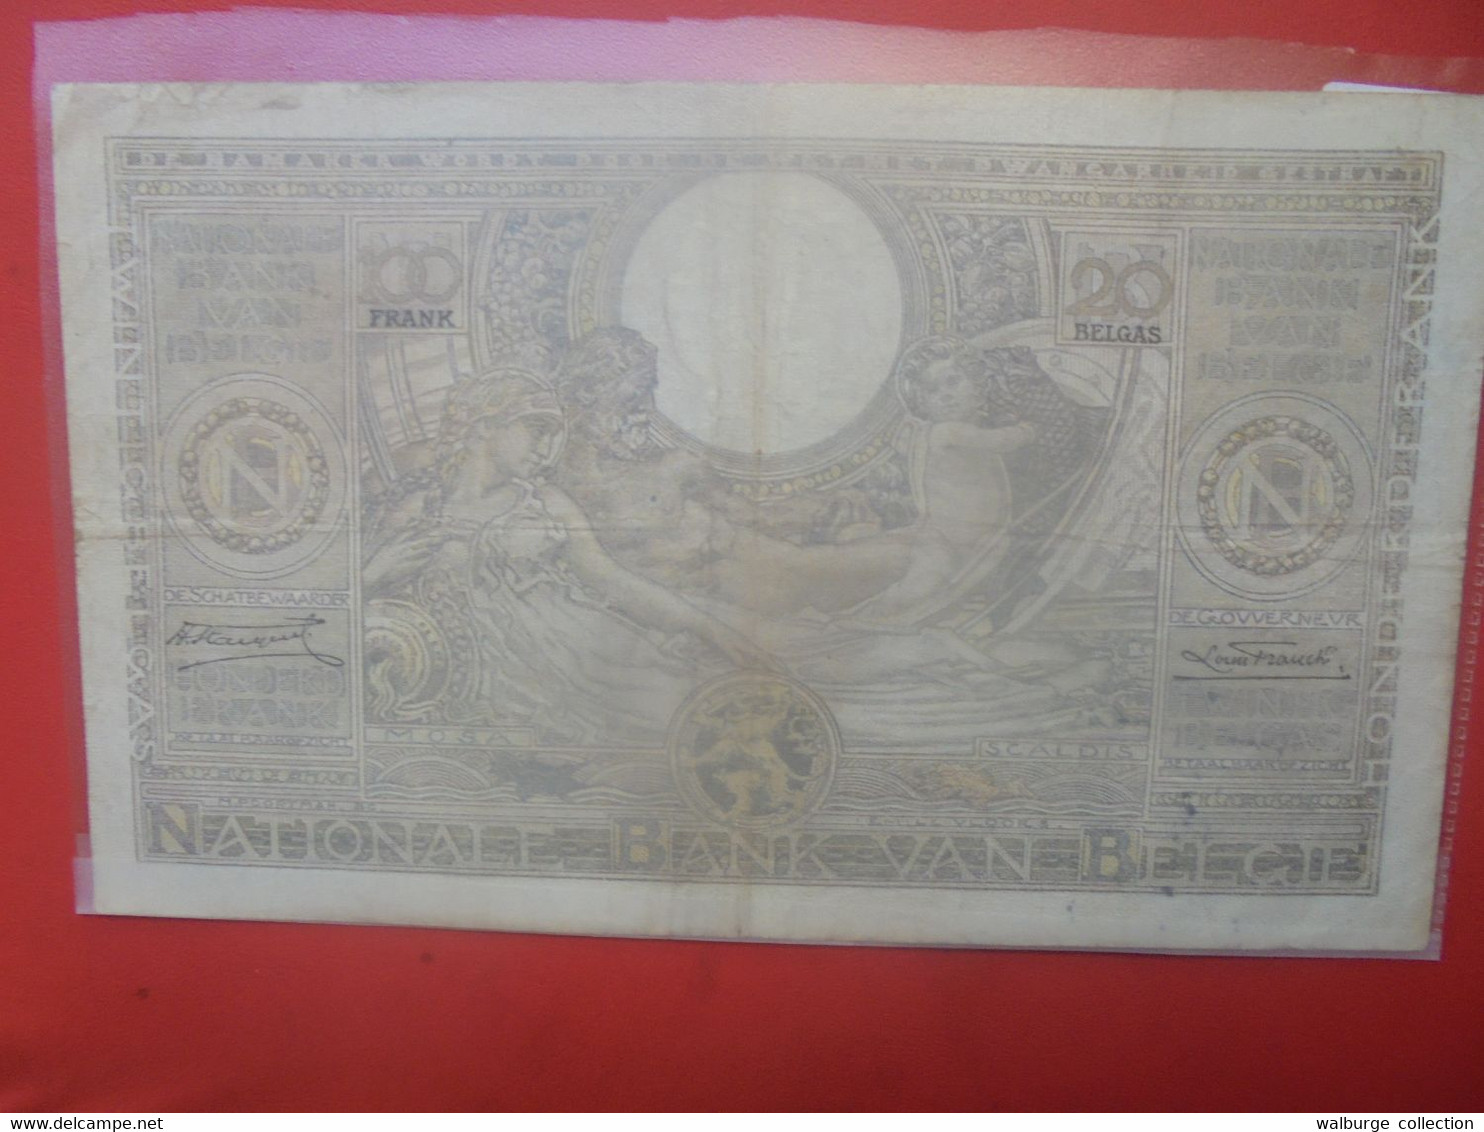 BELGIQUE 100 FRANCS 1935(Date+Rare) Circuler (B.27) - 100 Francs & 100 Francs-20 Belgas